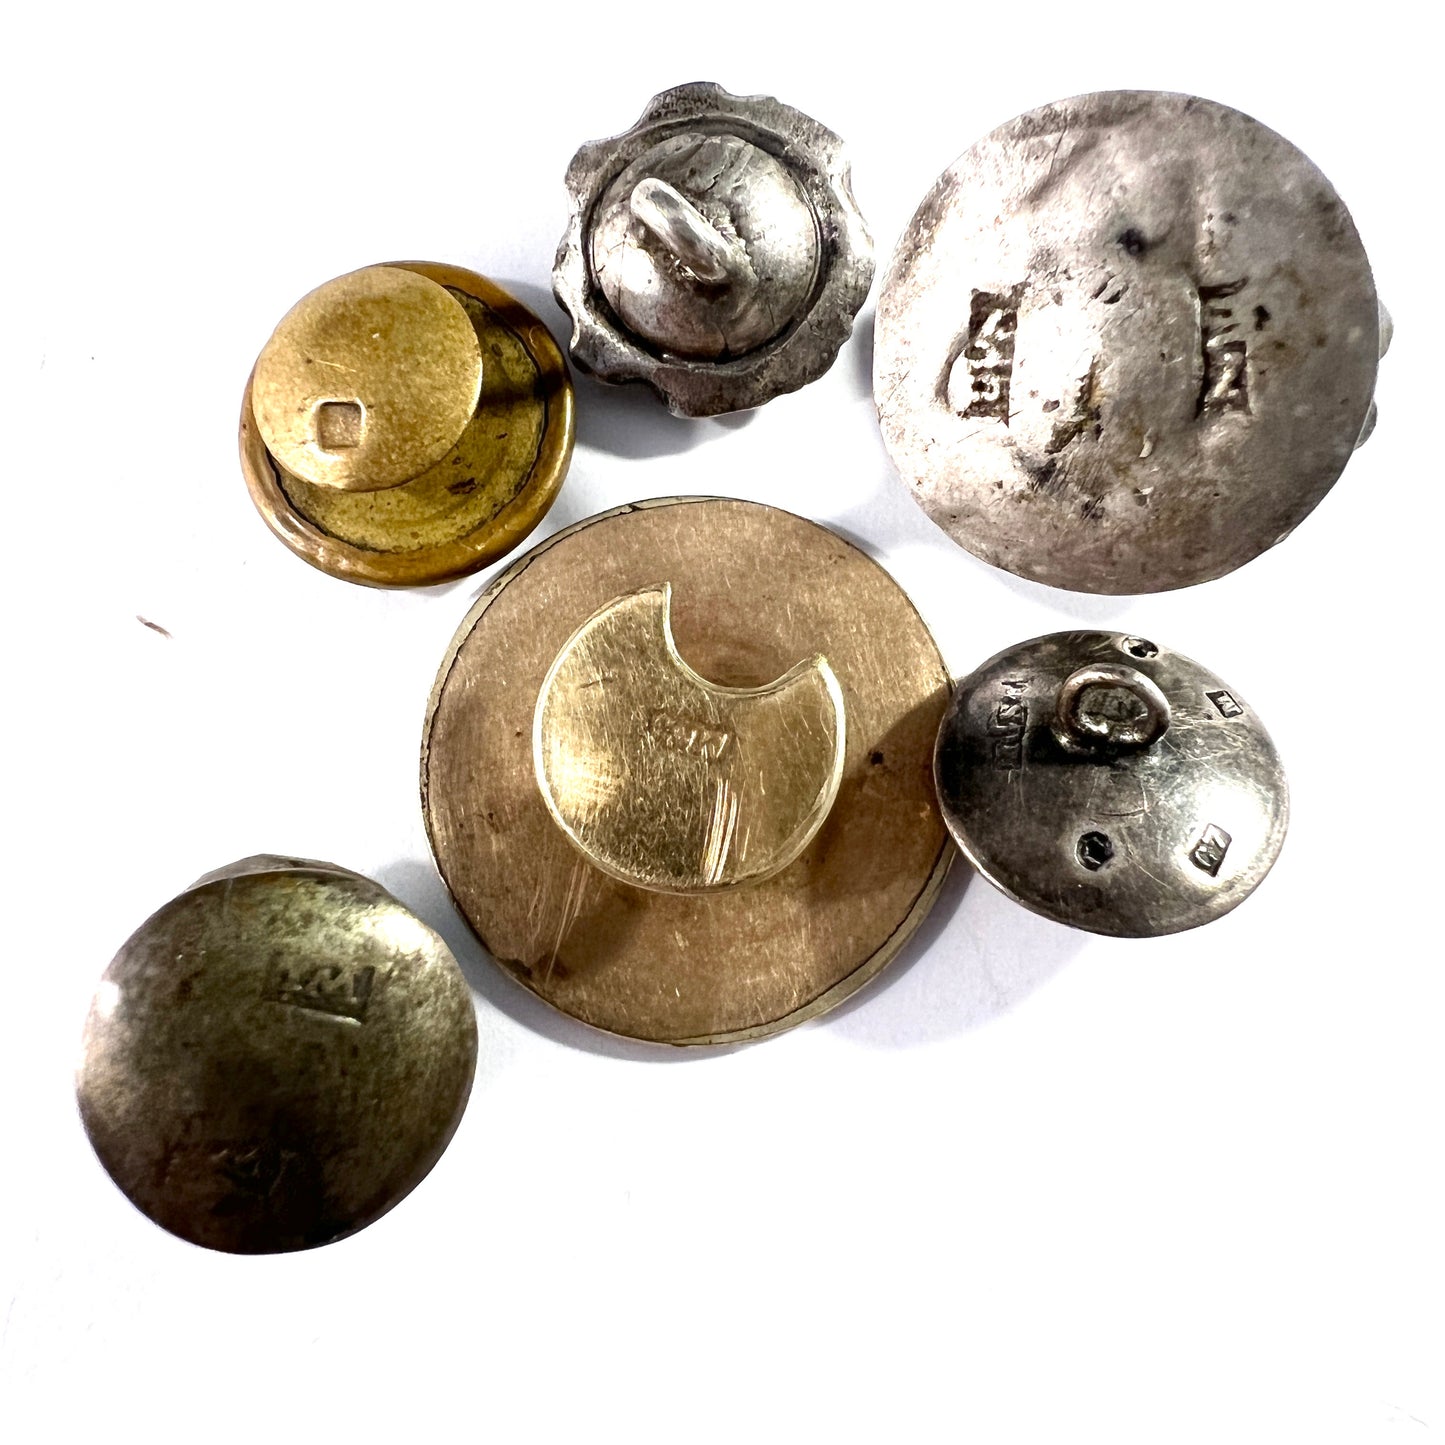 Job Lot Antique 1820s - 1905 Silver Metal Paste Buttons.